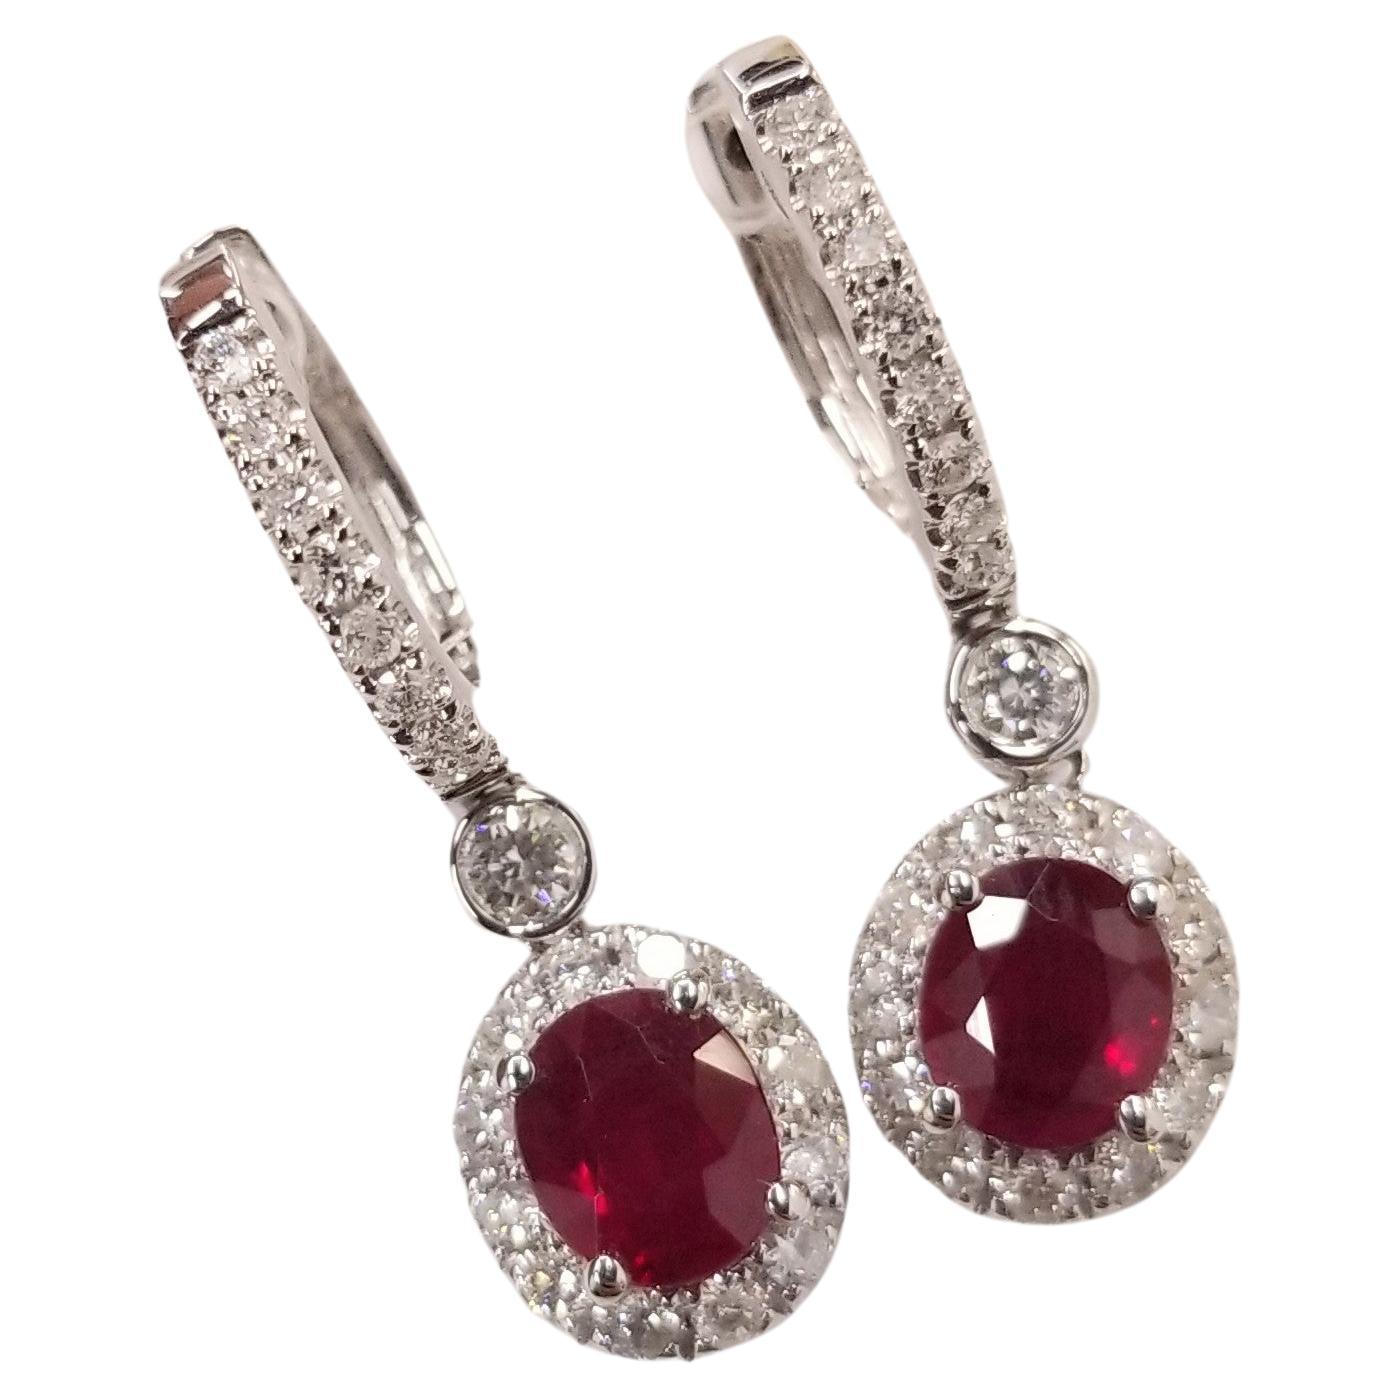 IGI Certified 1.58 Carat Ruby & 0.44 Carat Diamond Earrings in 18K White Gold